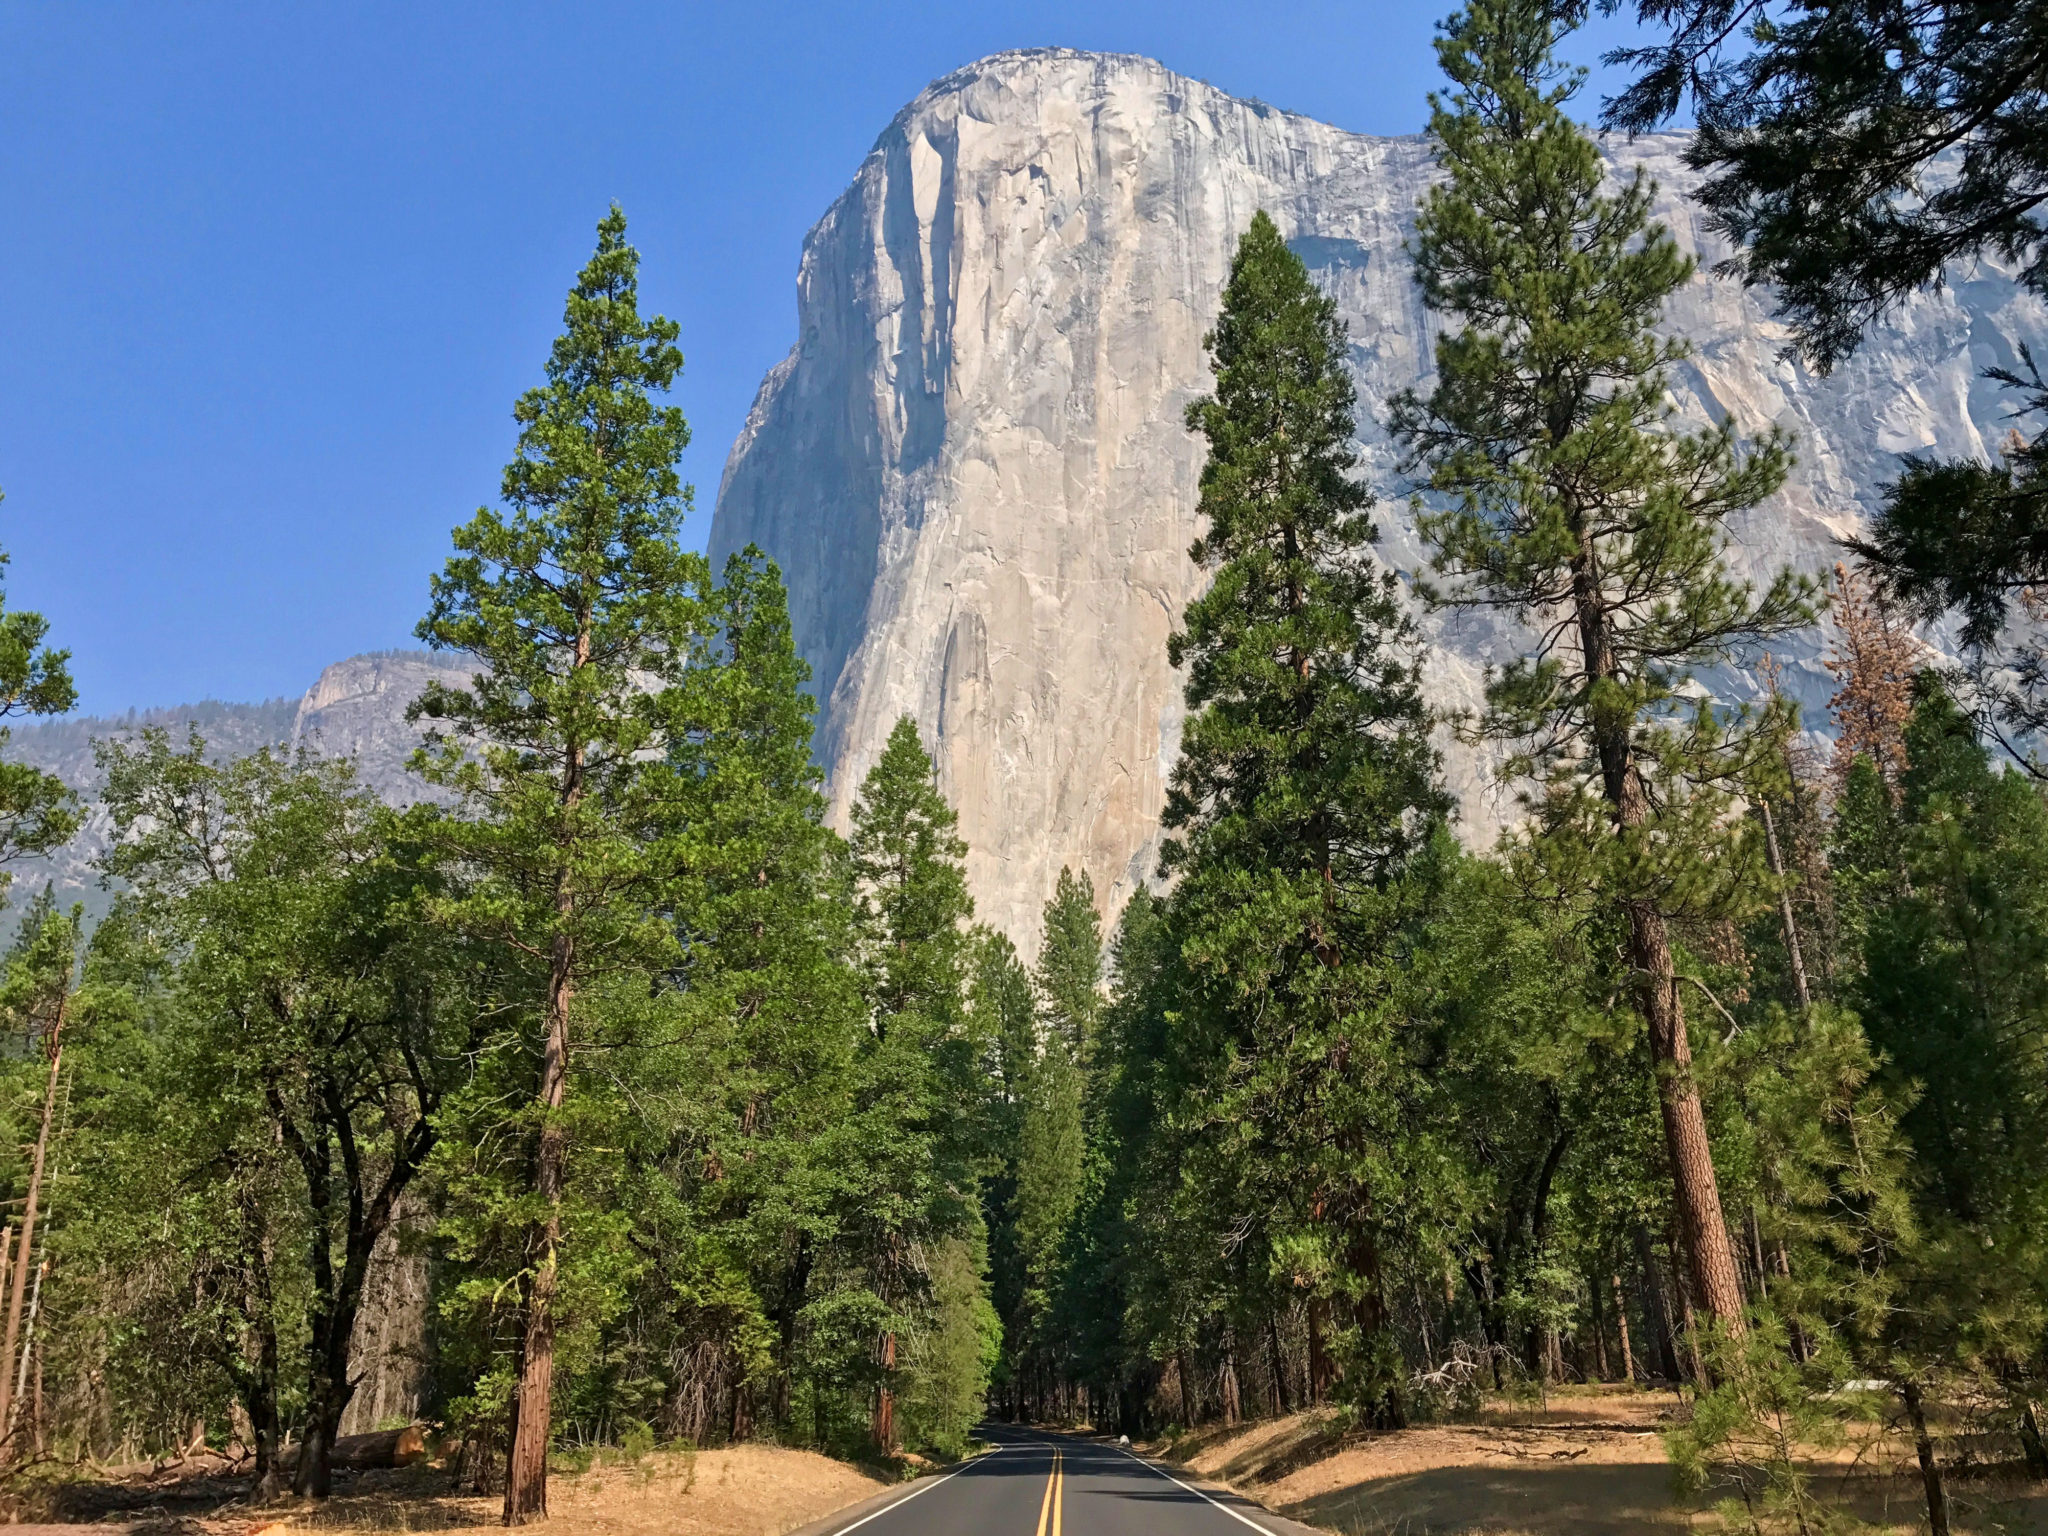 El Capitan from Yosemite Valley